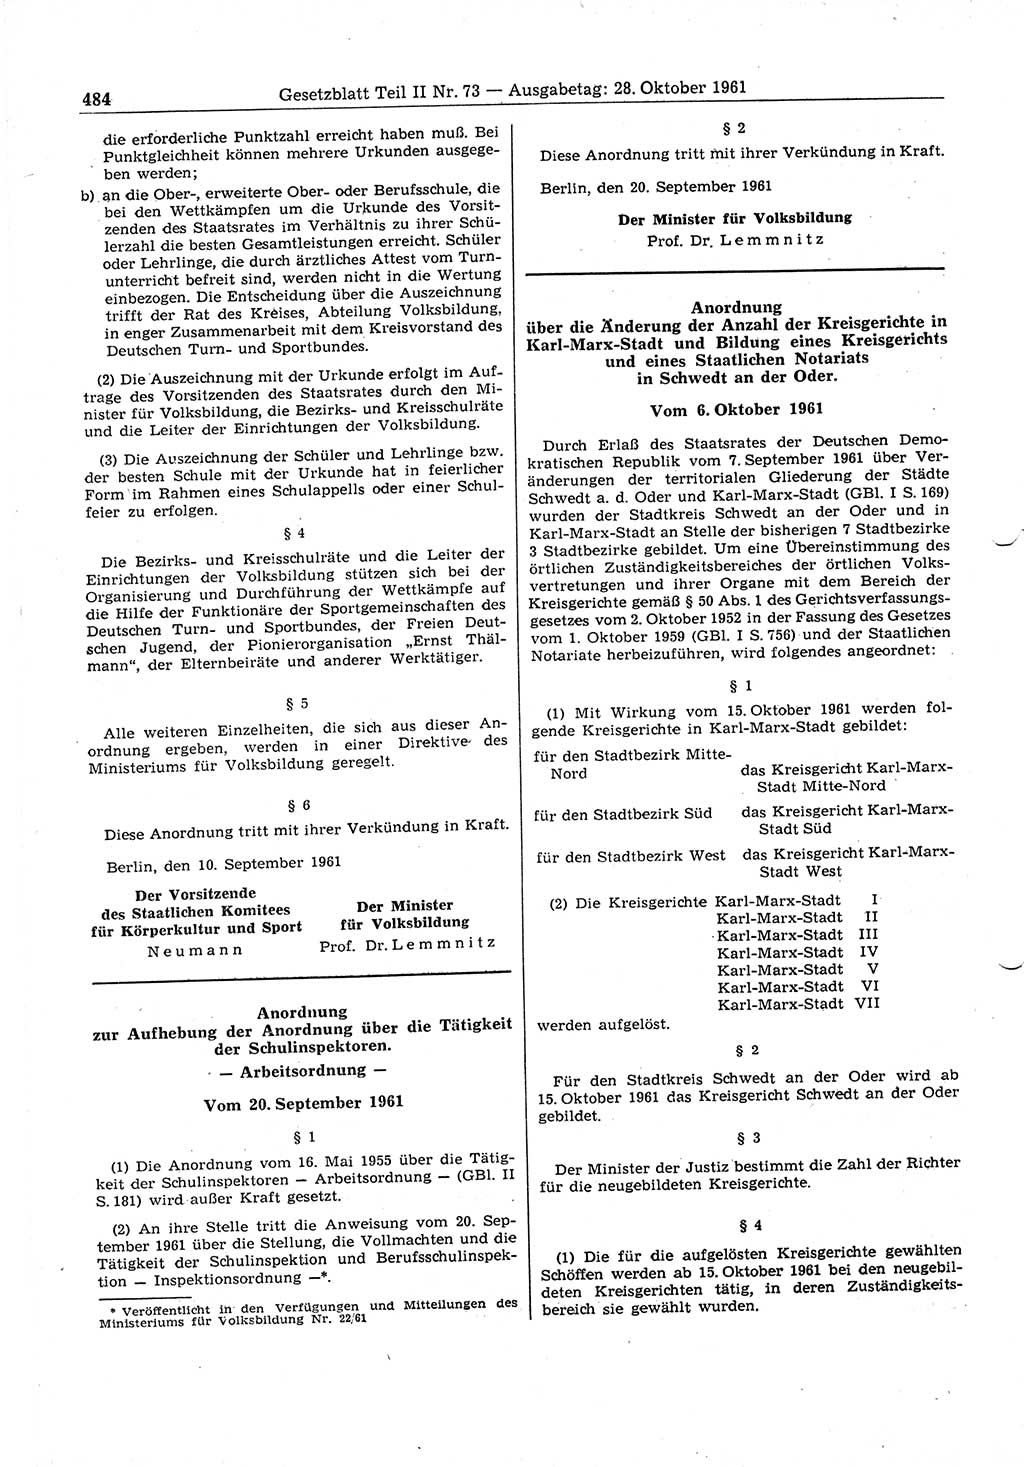 Gesetzblatt (GBl.) der Deutschen Demokratischen Republik (DDR) Teil ⅠⅠ 1961, Seite 484 (GBl. DDR ⅠⅠ 1961, S. 484)